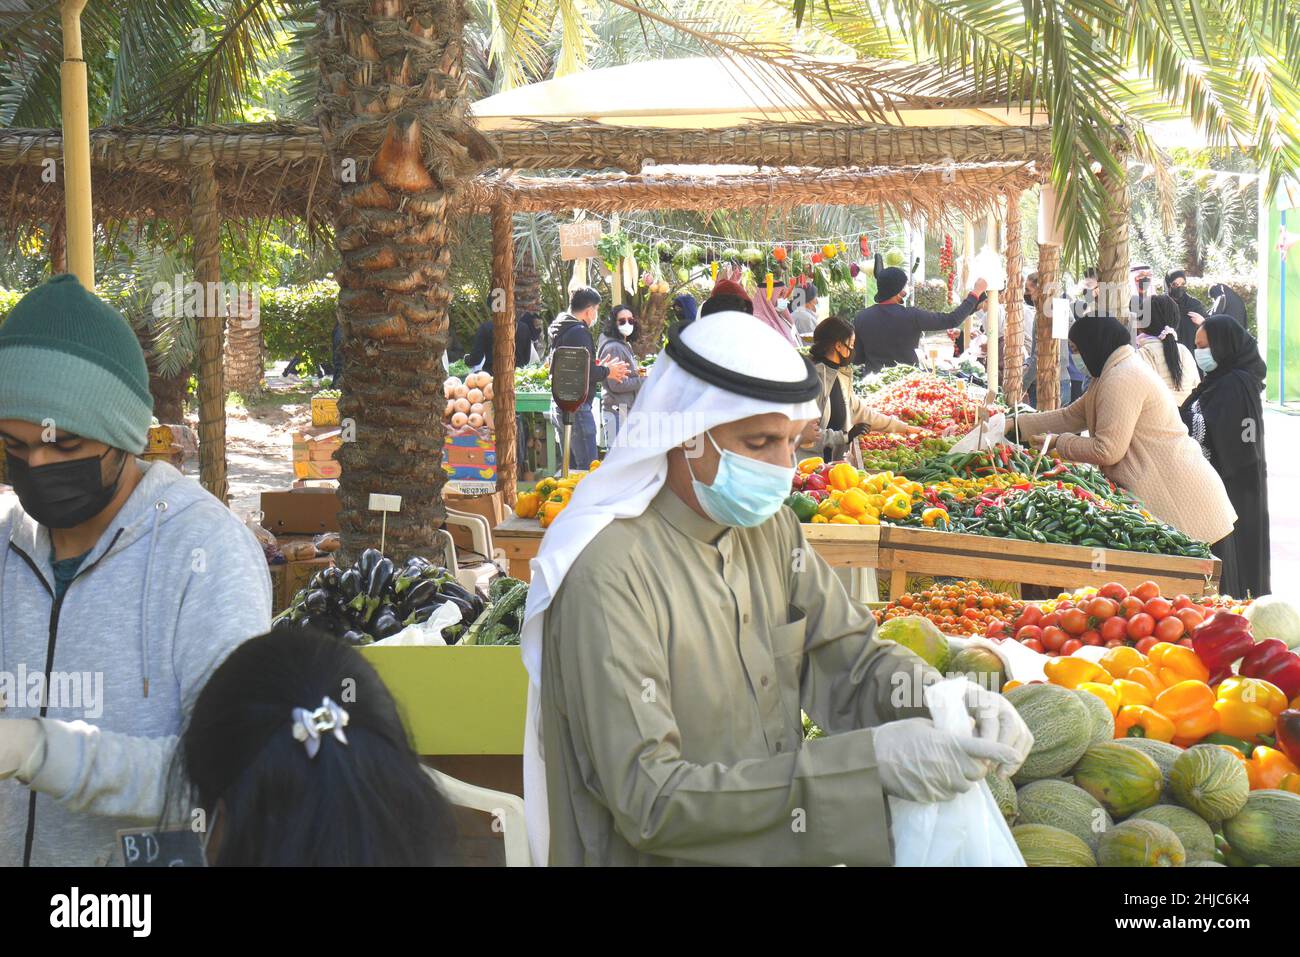 Titolare della stalla Bahraini che vende verdure, il mercato agricolo durante la pandemia di Covid, Giardino Botanico di Budaiya, Regno del Bahrain Foto Stock